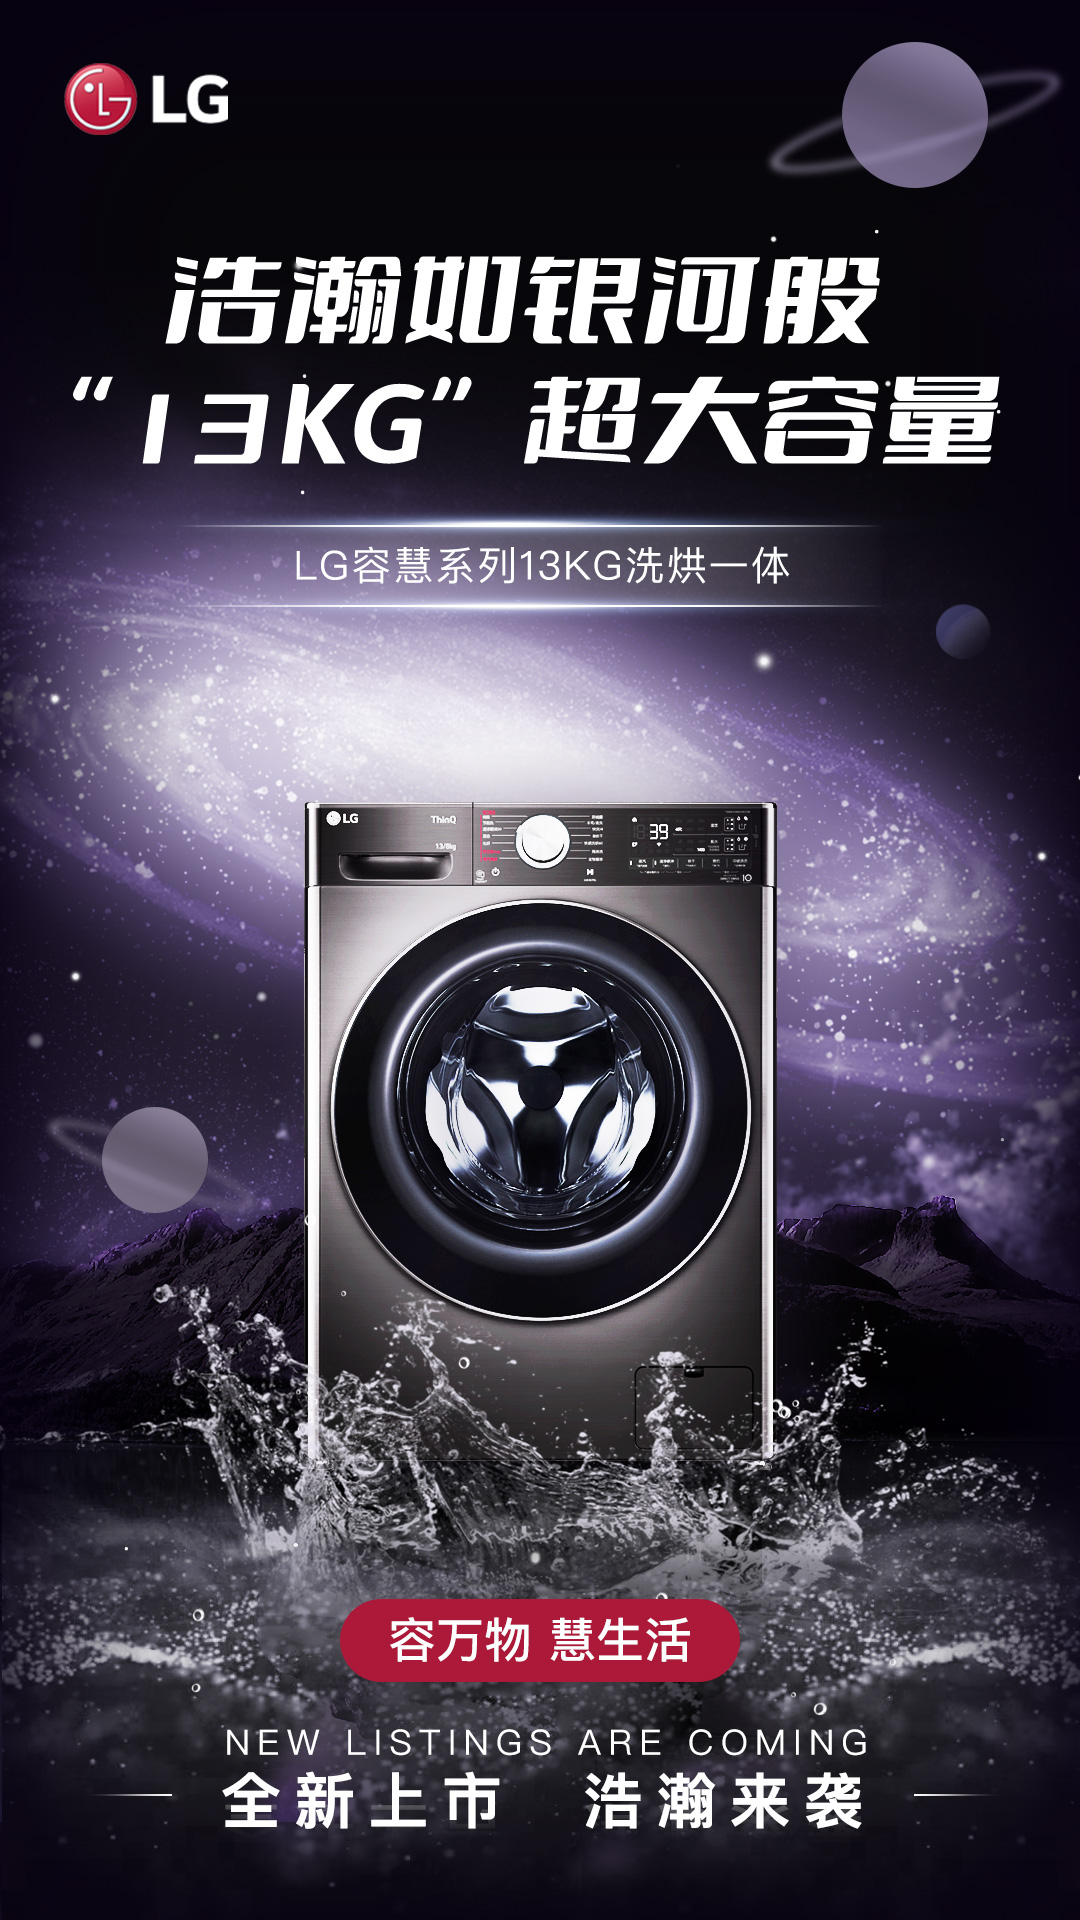 LG推出容慧系列惊“洗”13Kg大容量洗烘一体新品，五大创新技术核心还您更多美好生活